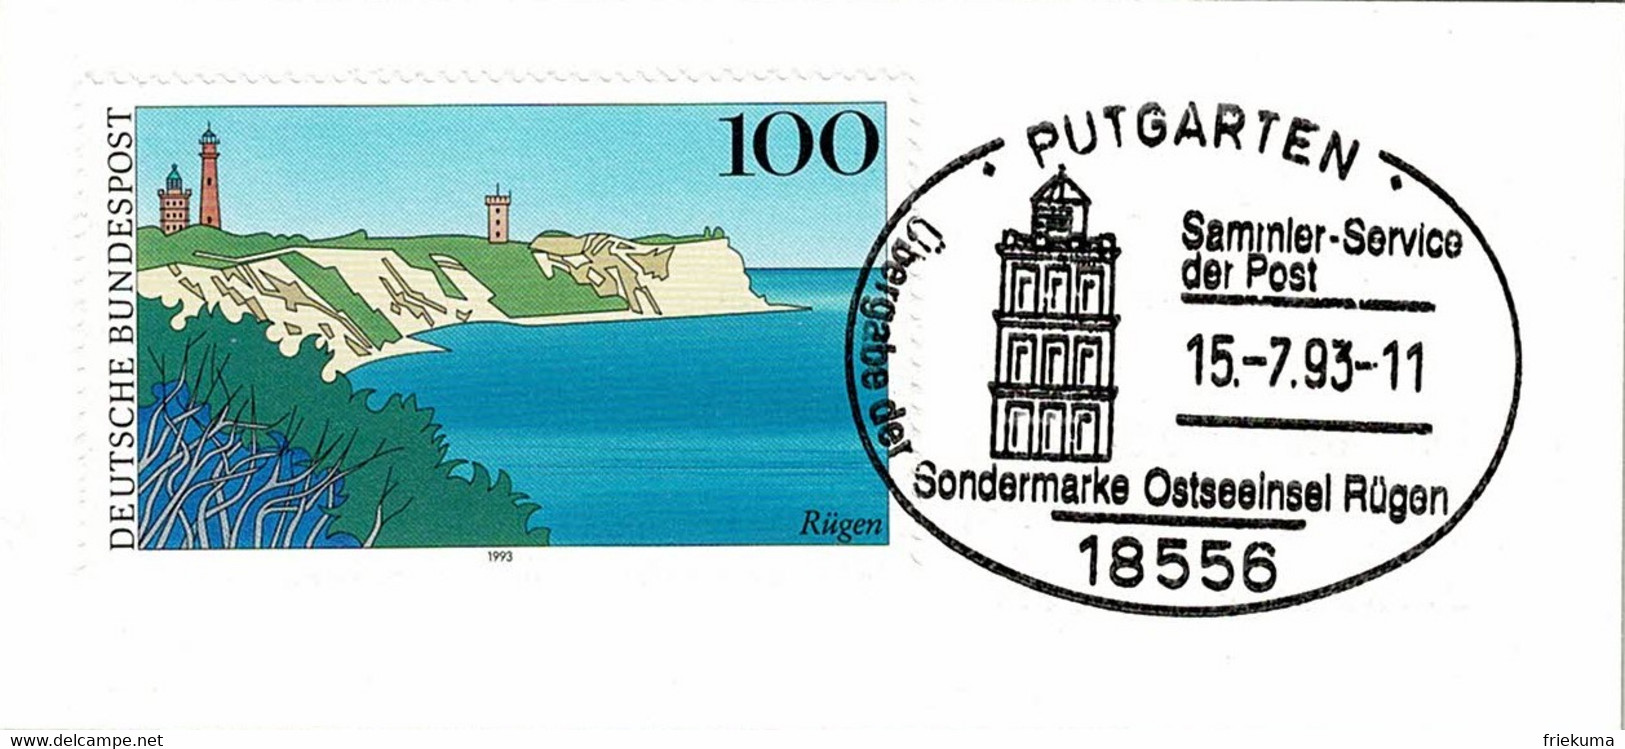 Deutsche Bundespost 1993, Sonderstempel Ostseeinsel Rügen Putgarten - Isole